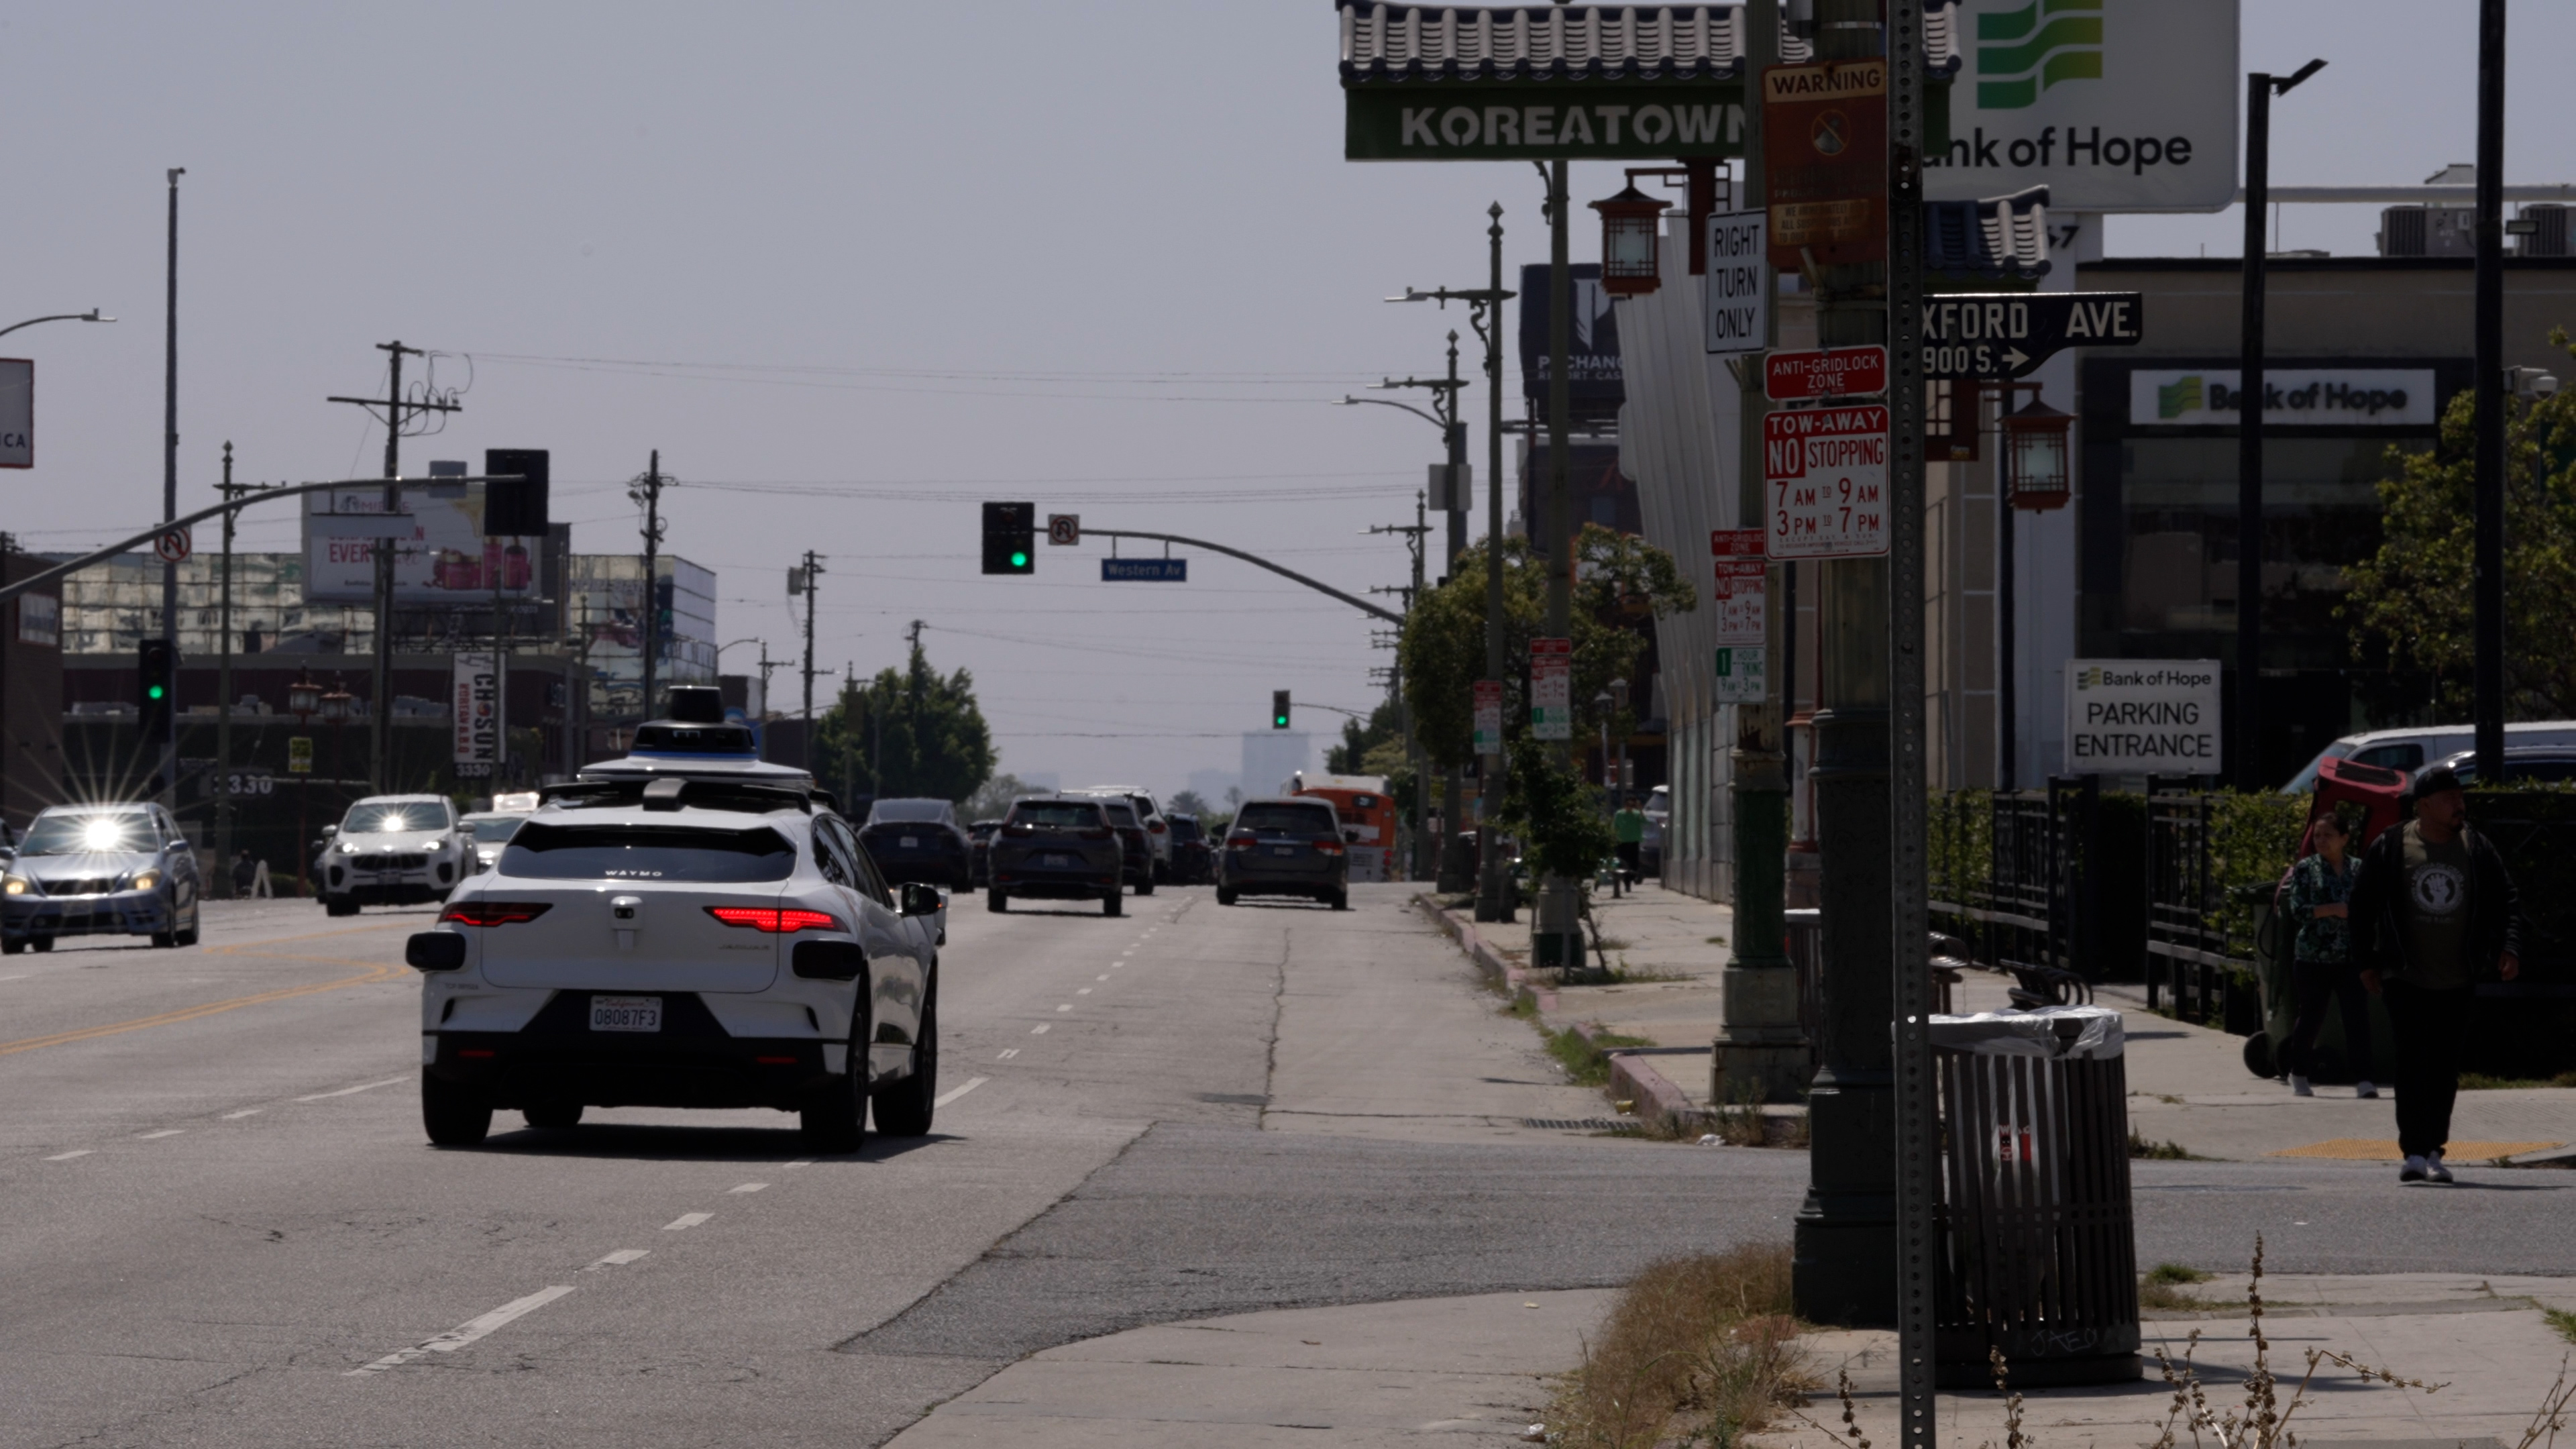 Waymo driving in Koreatown, Los Angeles